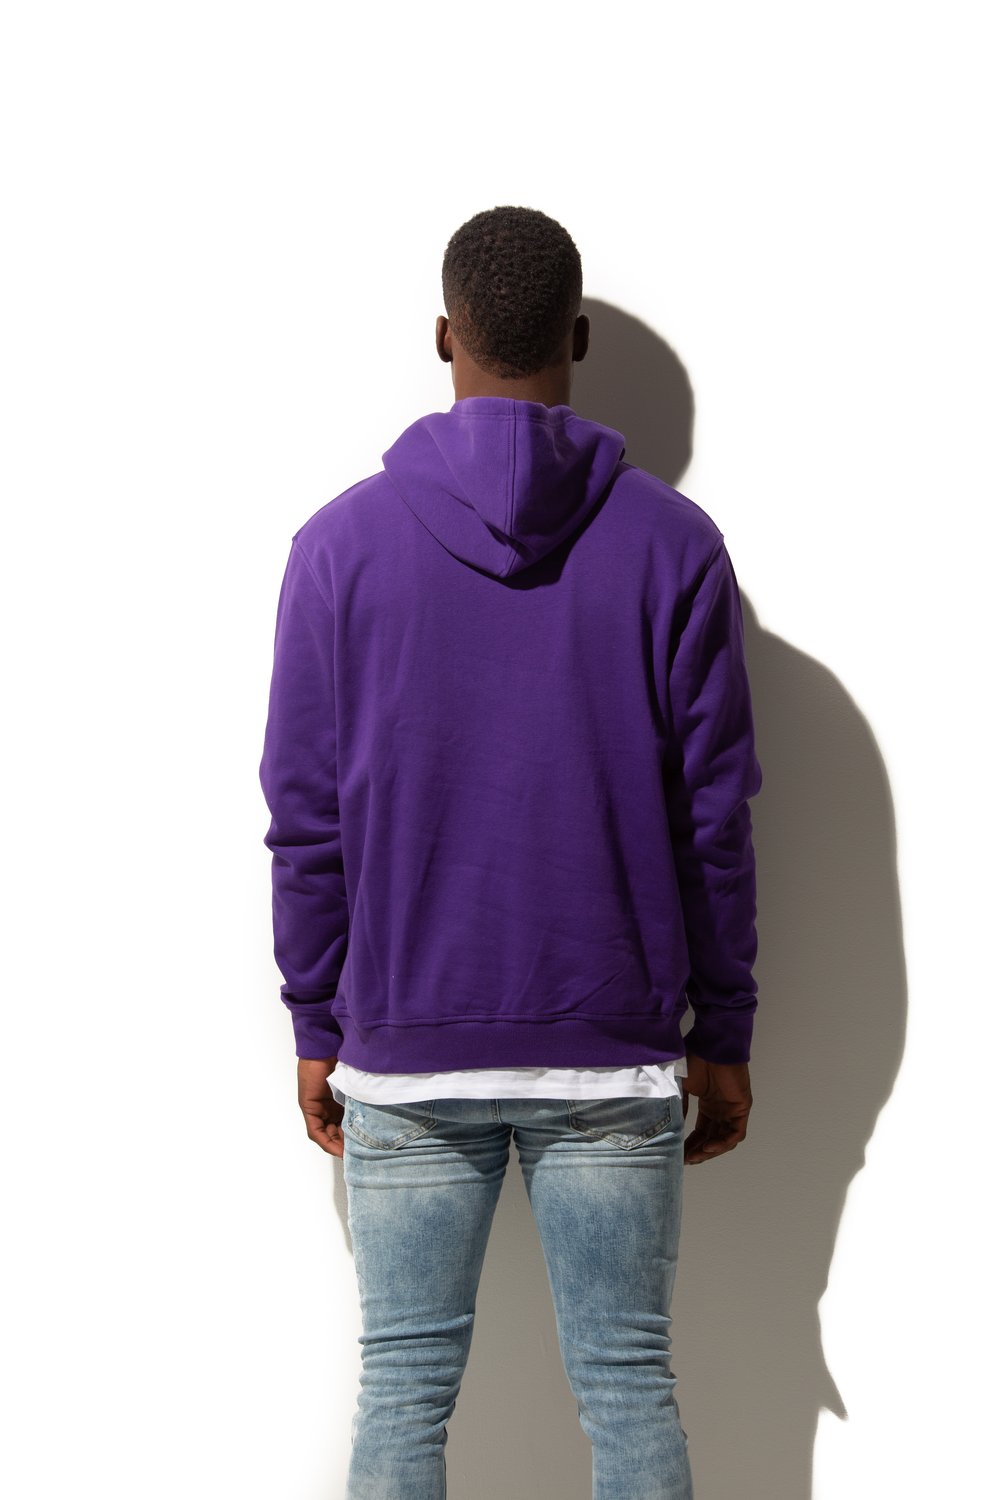 Purple Pullover Premium Unisex Hoody